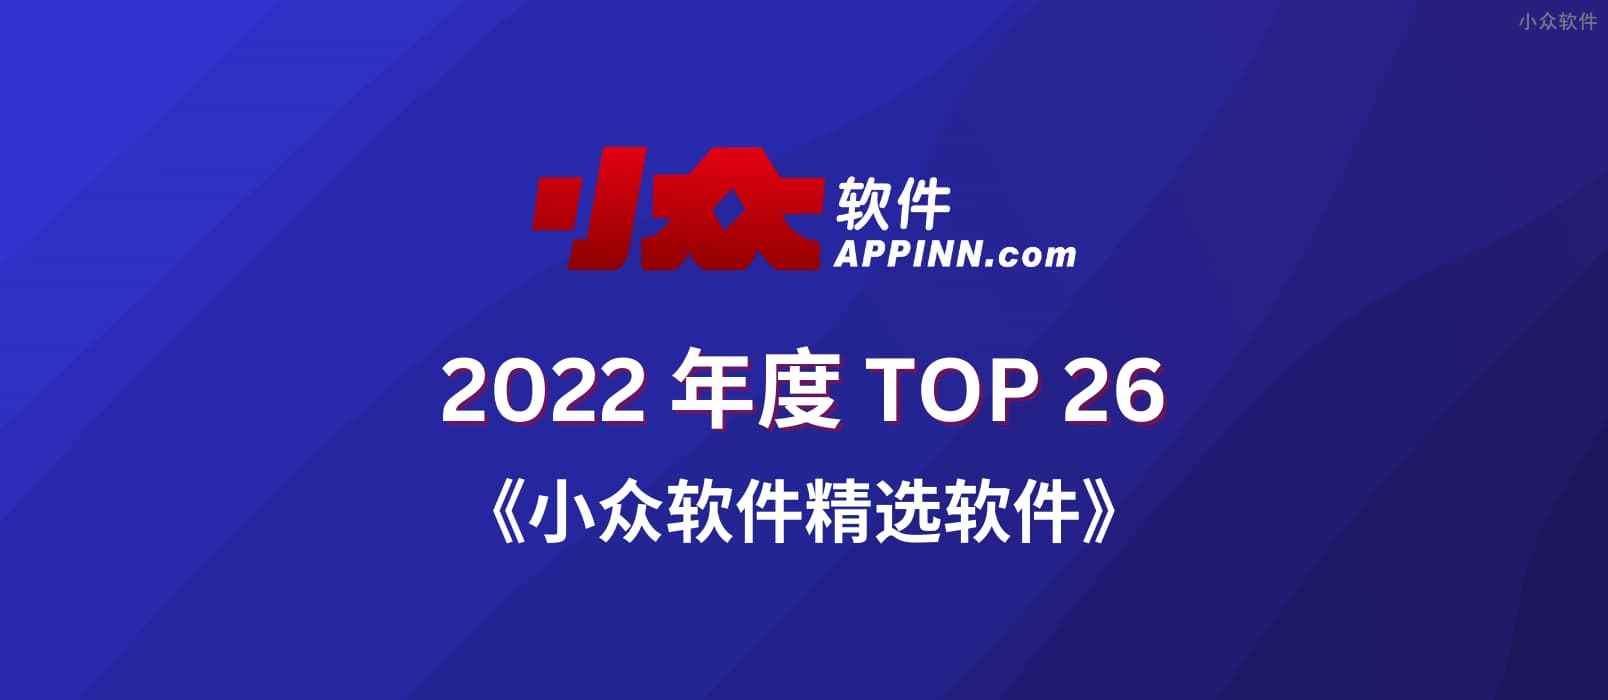 2022 小众软件精选软件 TOP 26【第二部分】